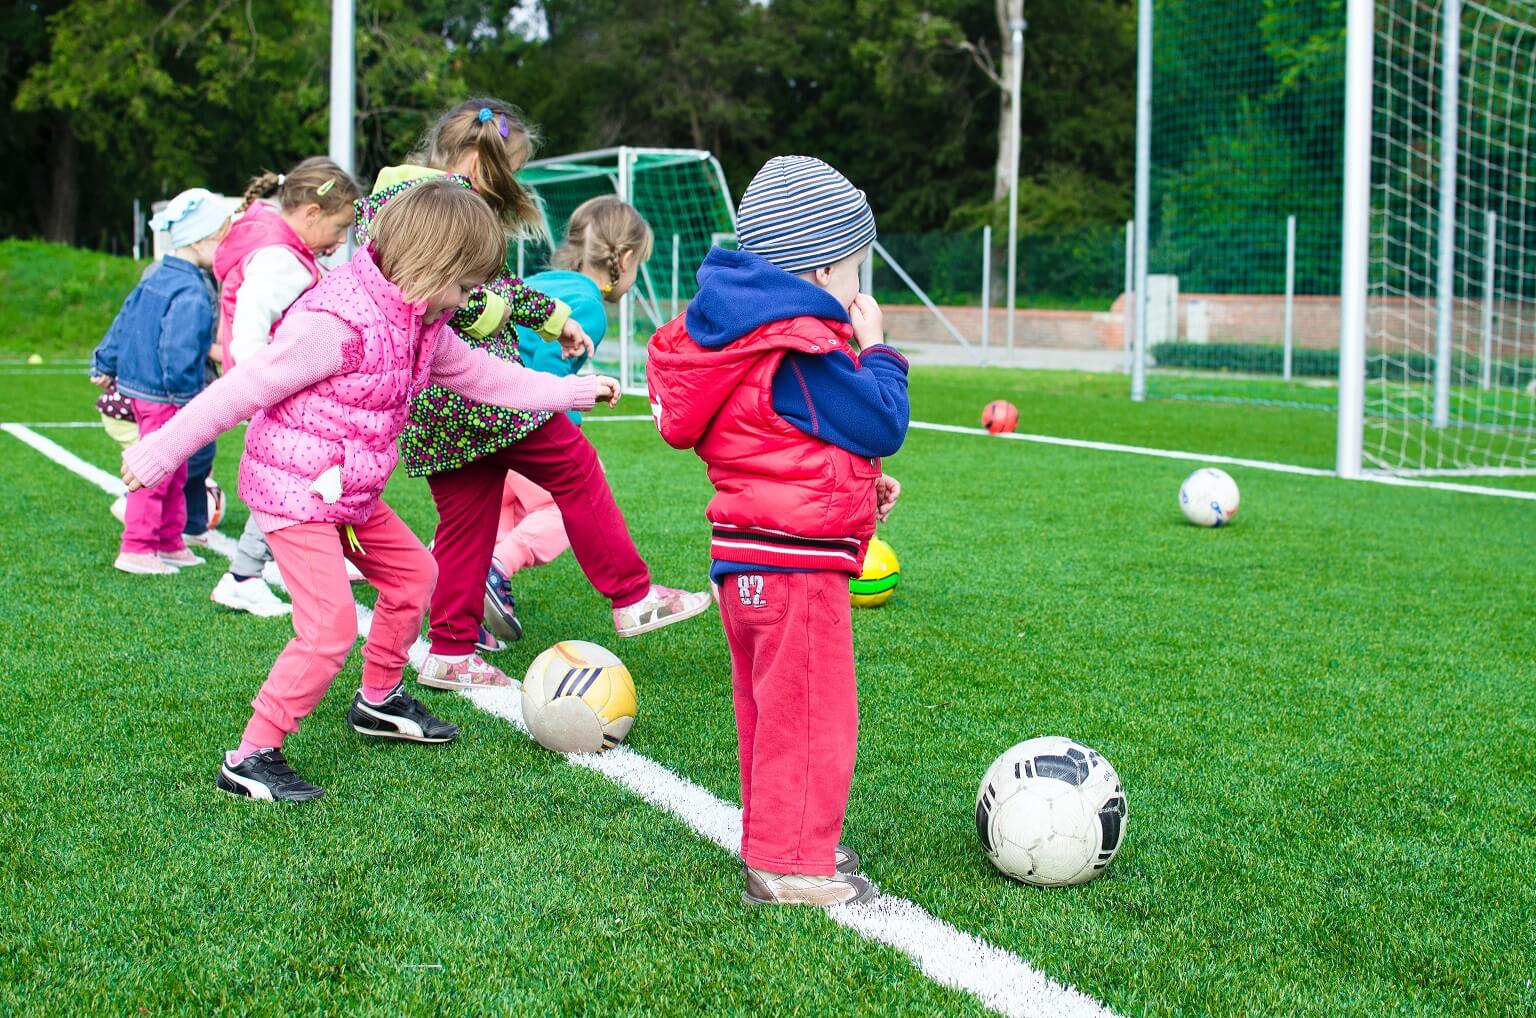 zajęcia wychowania fizycznego - dzieci grają w piłkę nożną